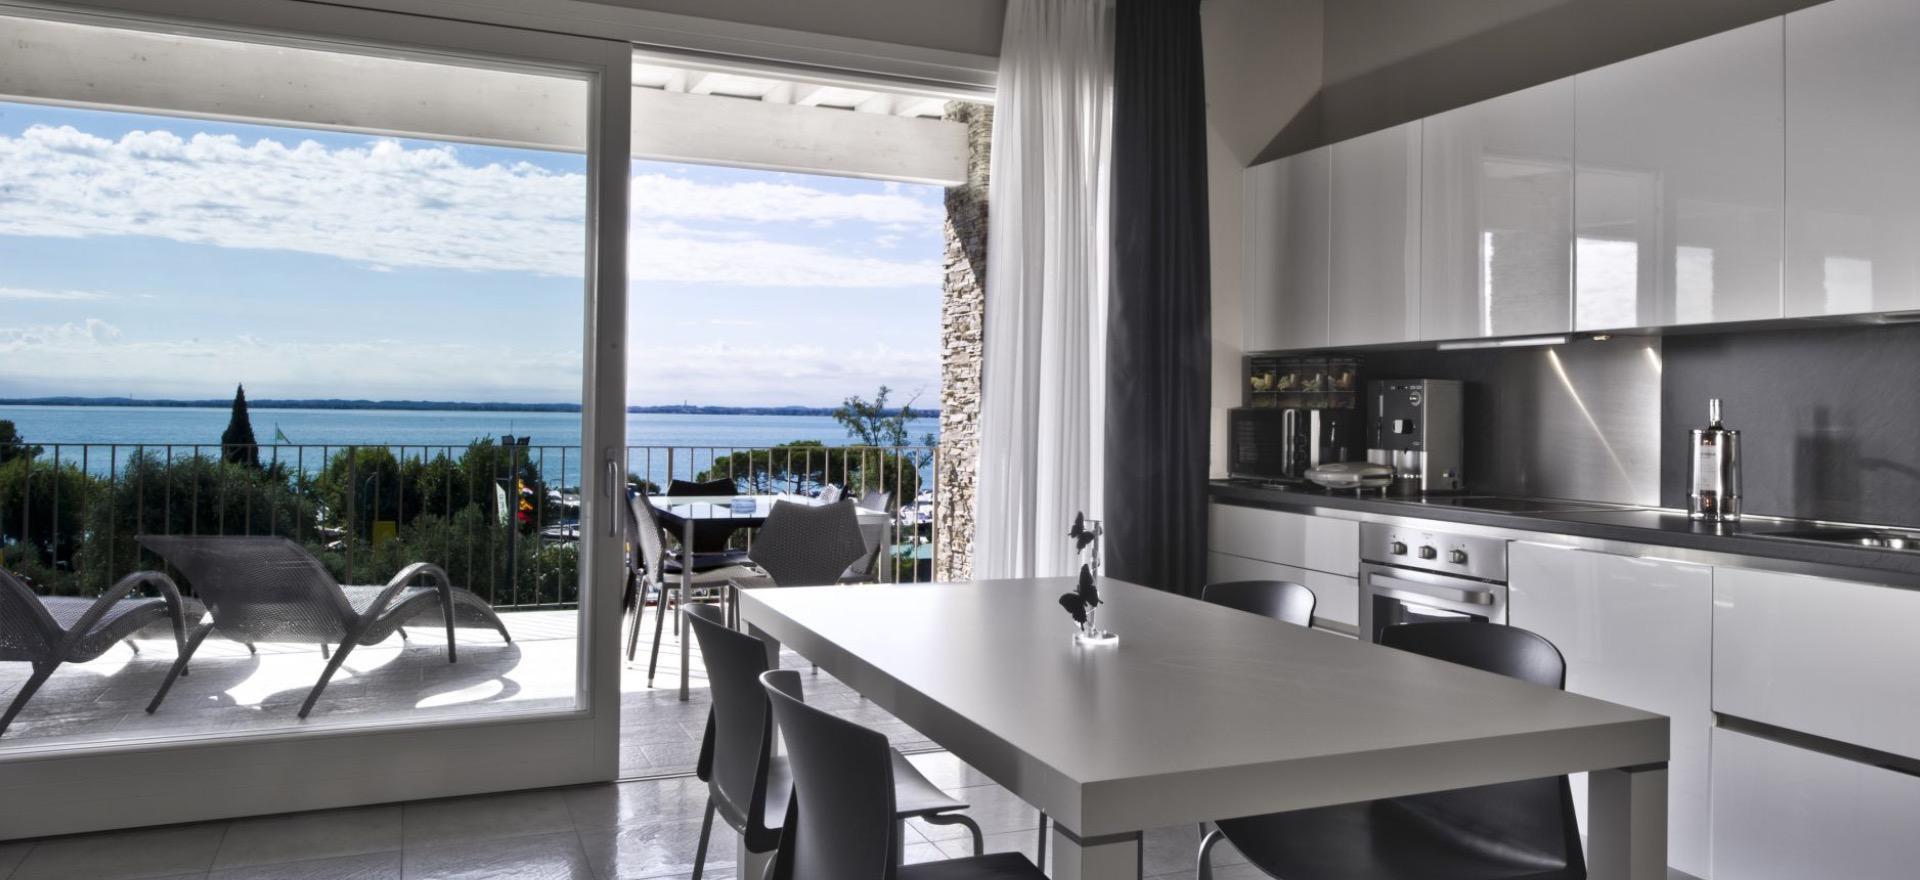 Agriturismo Lake Como and Lake Garda Child-friendly residence within walking distance of Lake Garda